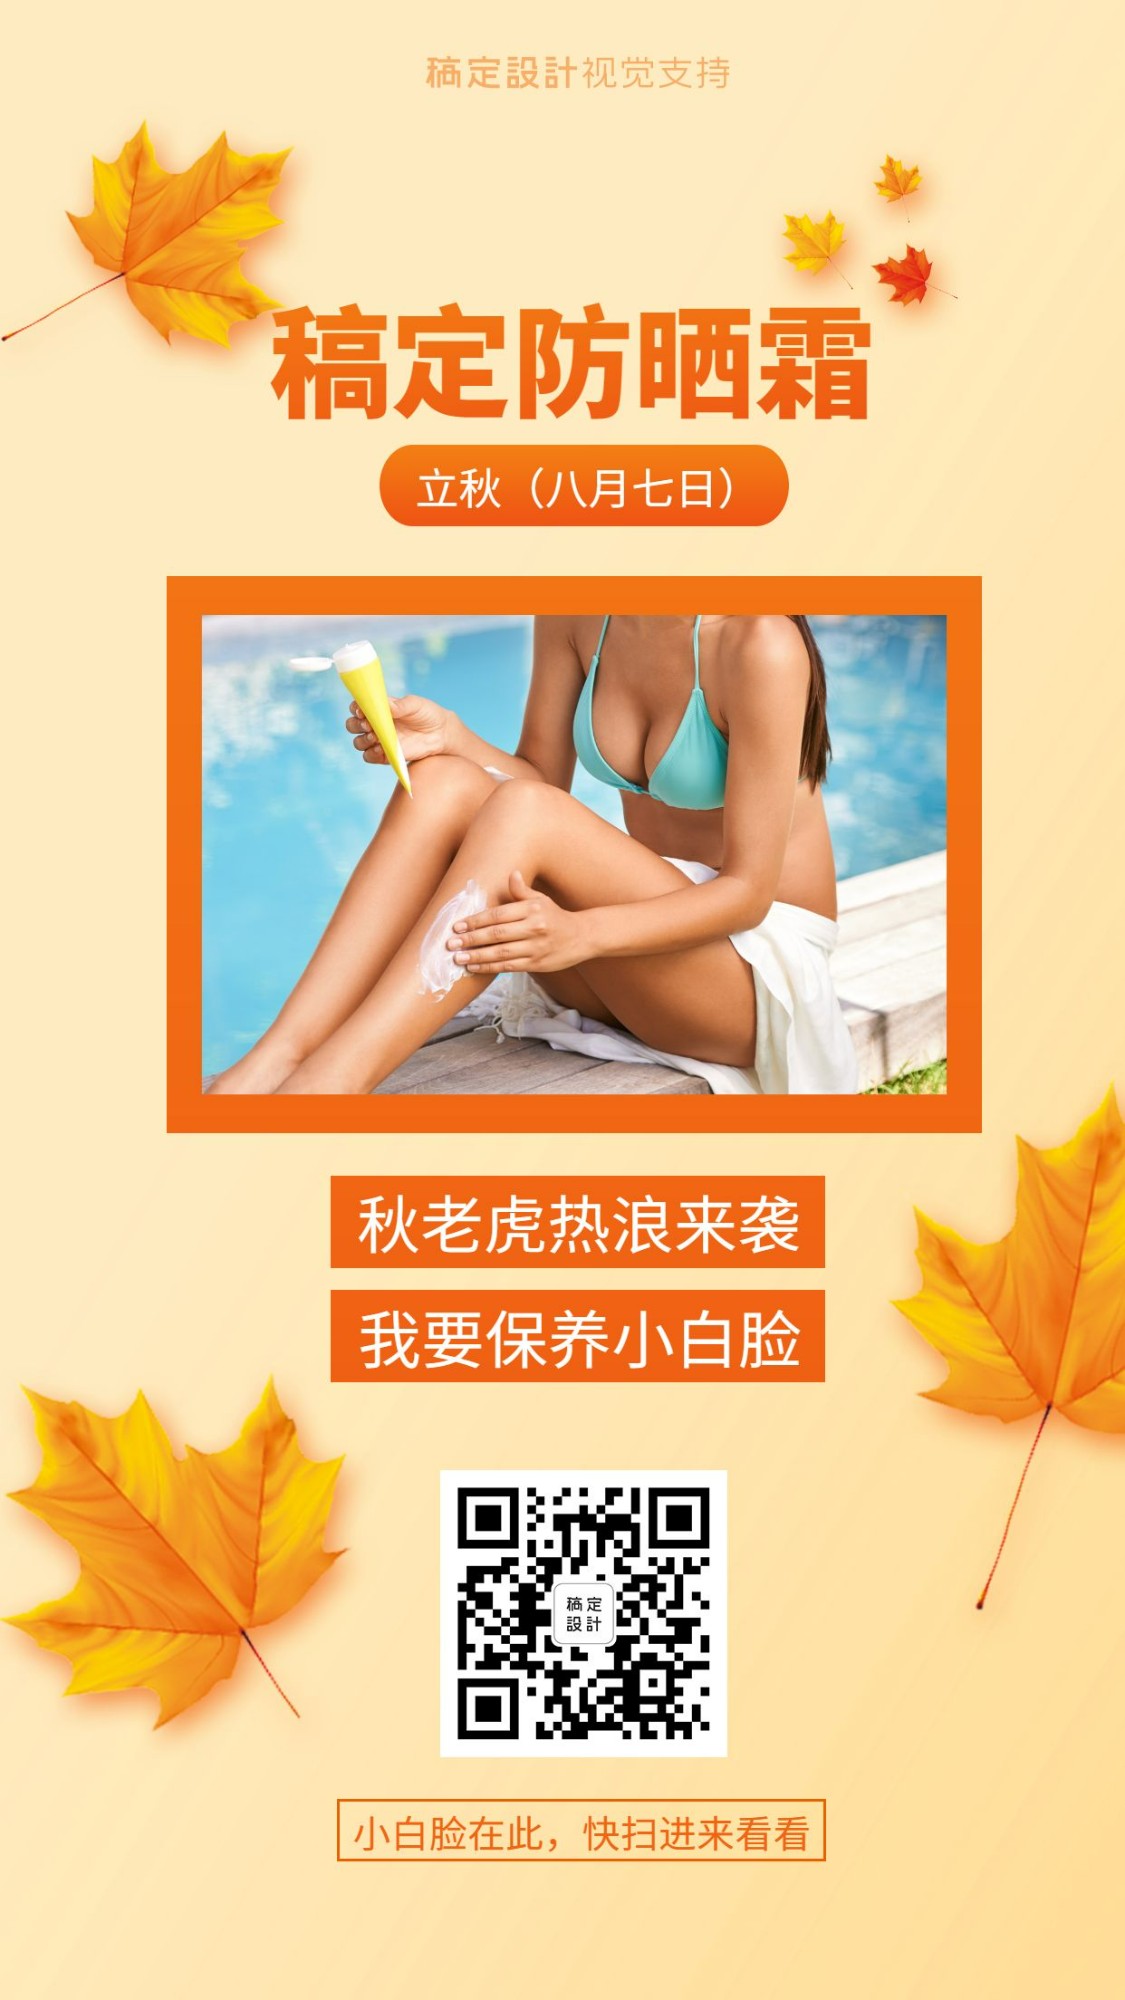 夏日防晒产品宣传海报预览效果